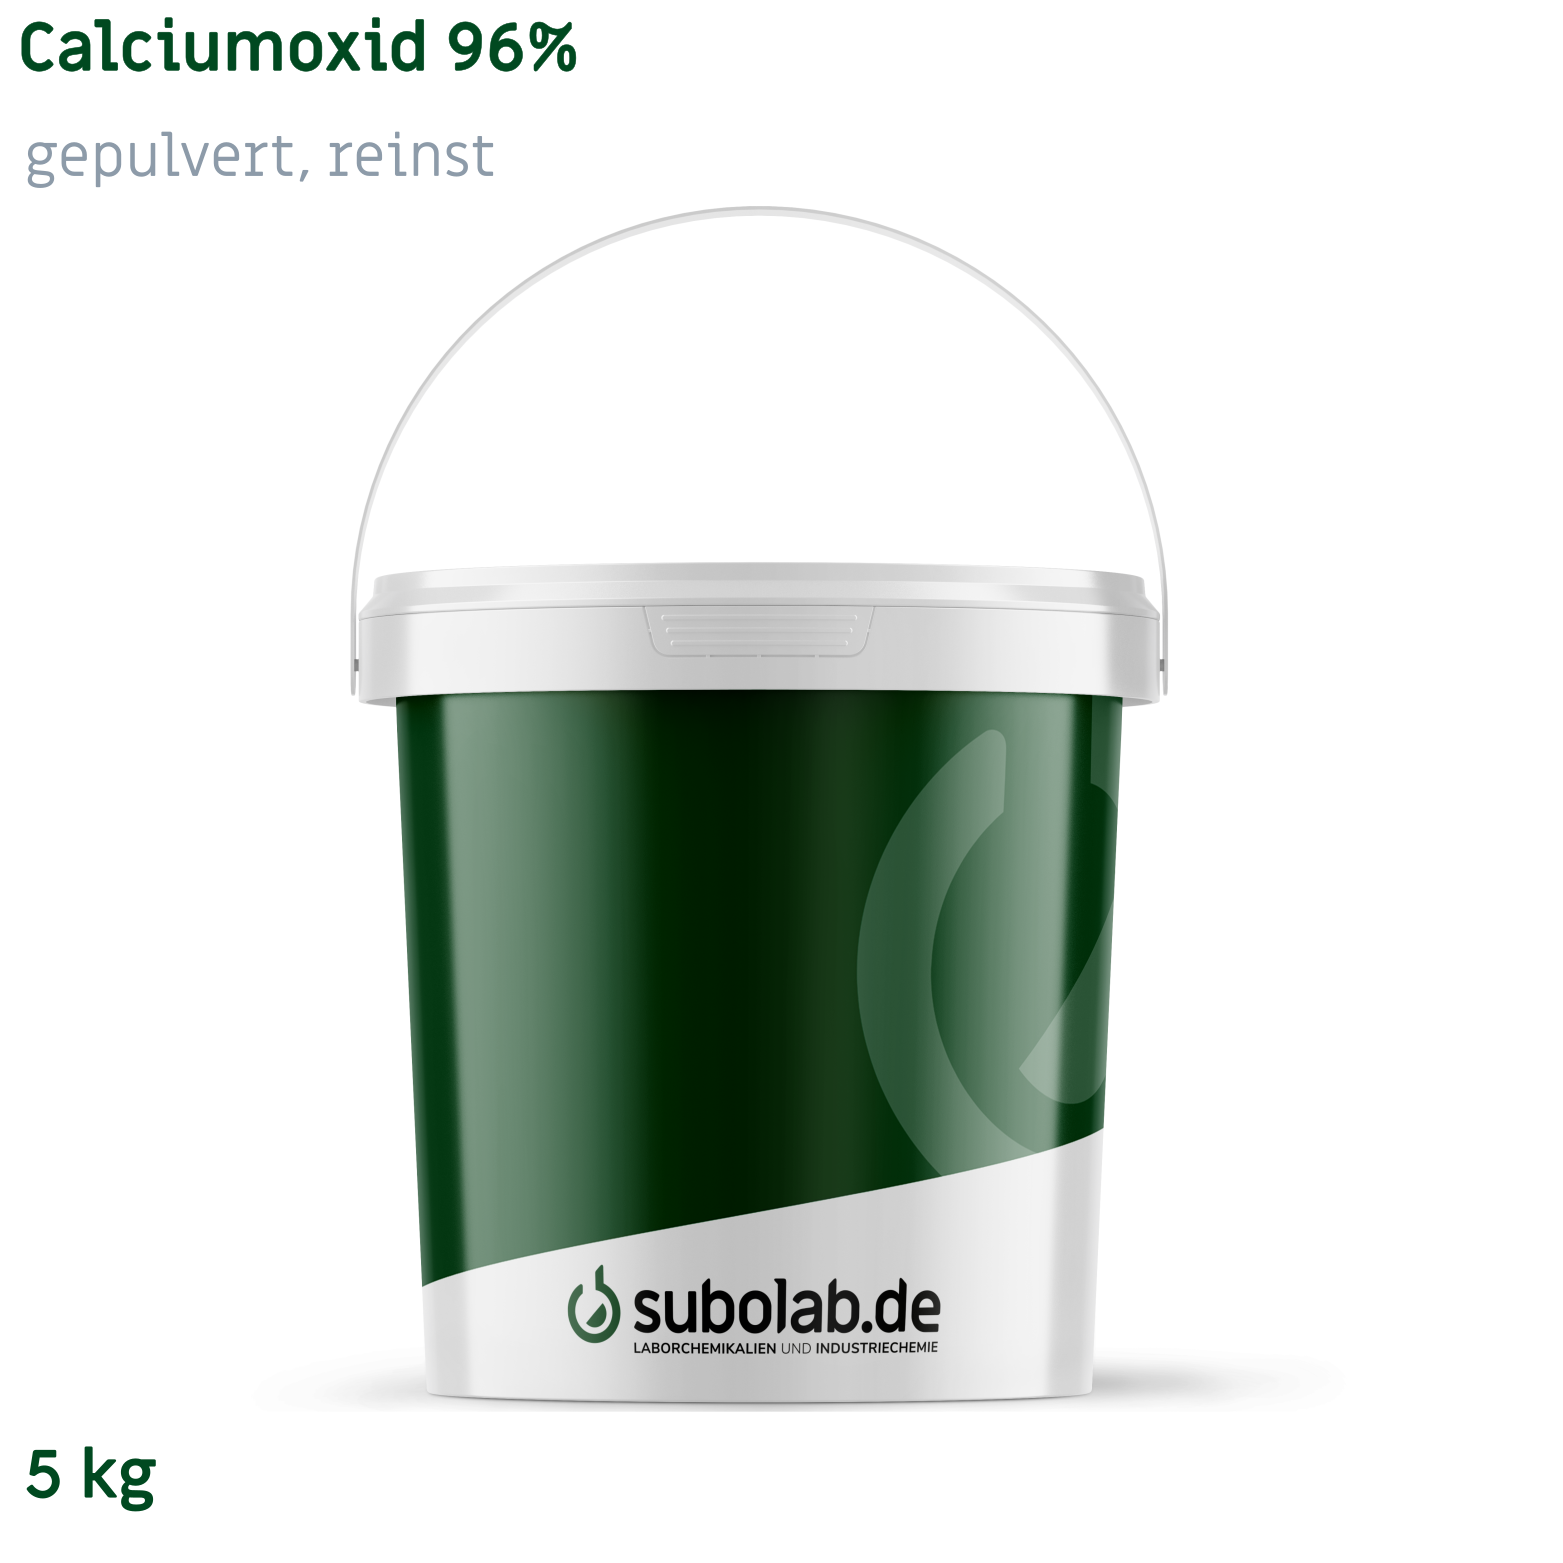 Bild von Calciumoxid 96% gepulvert, reinst (5 kg)